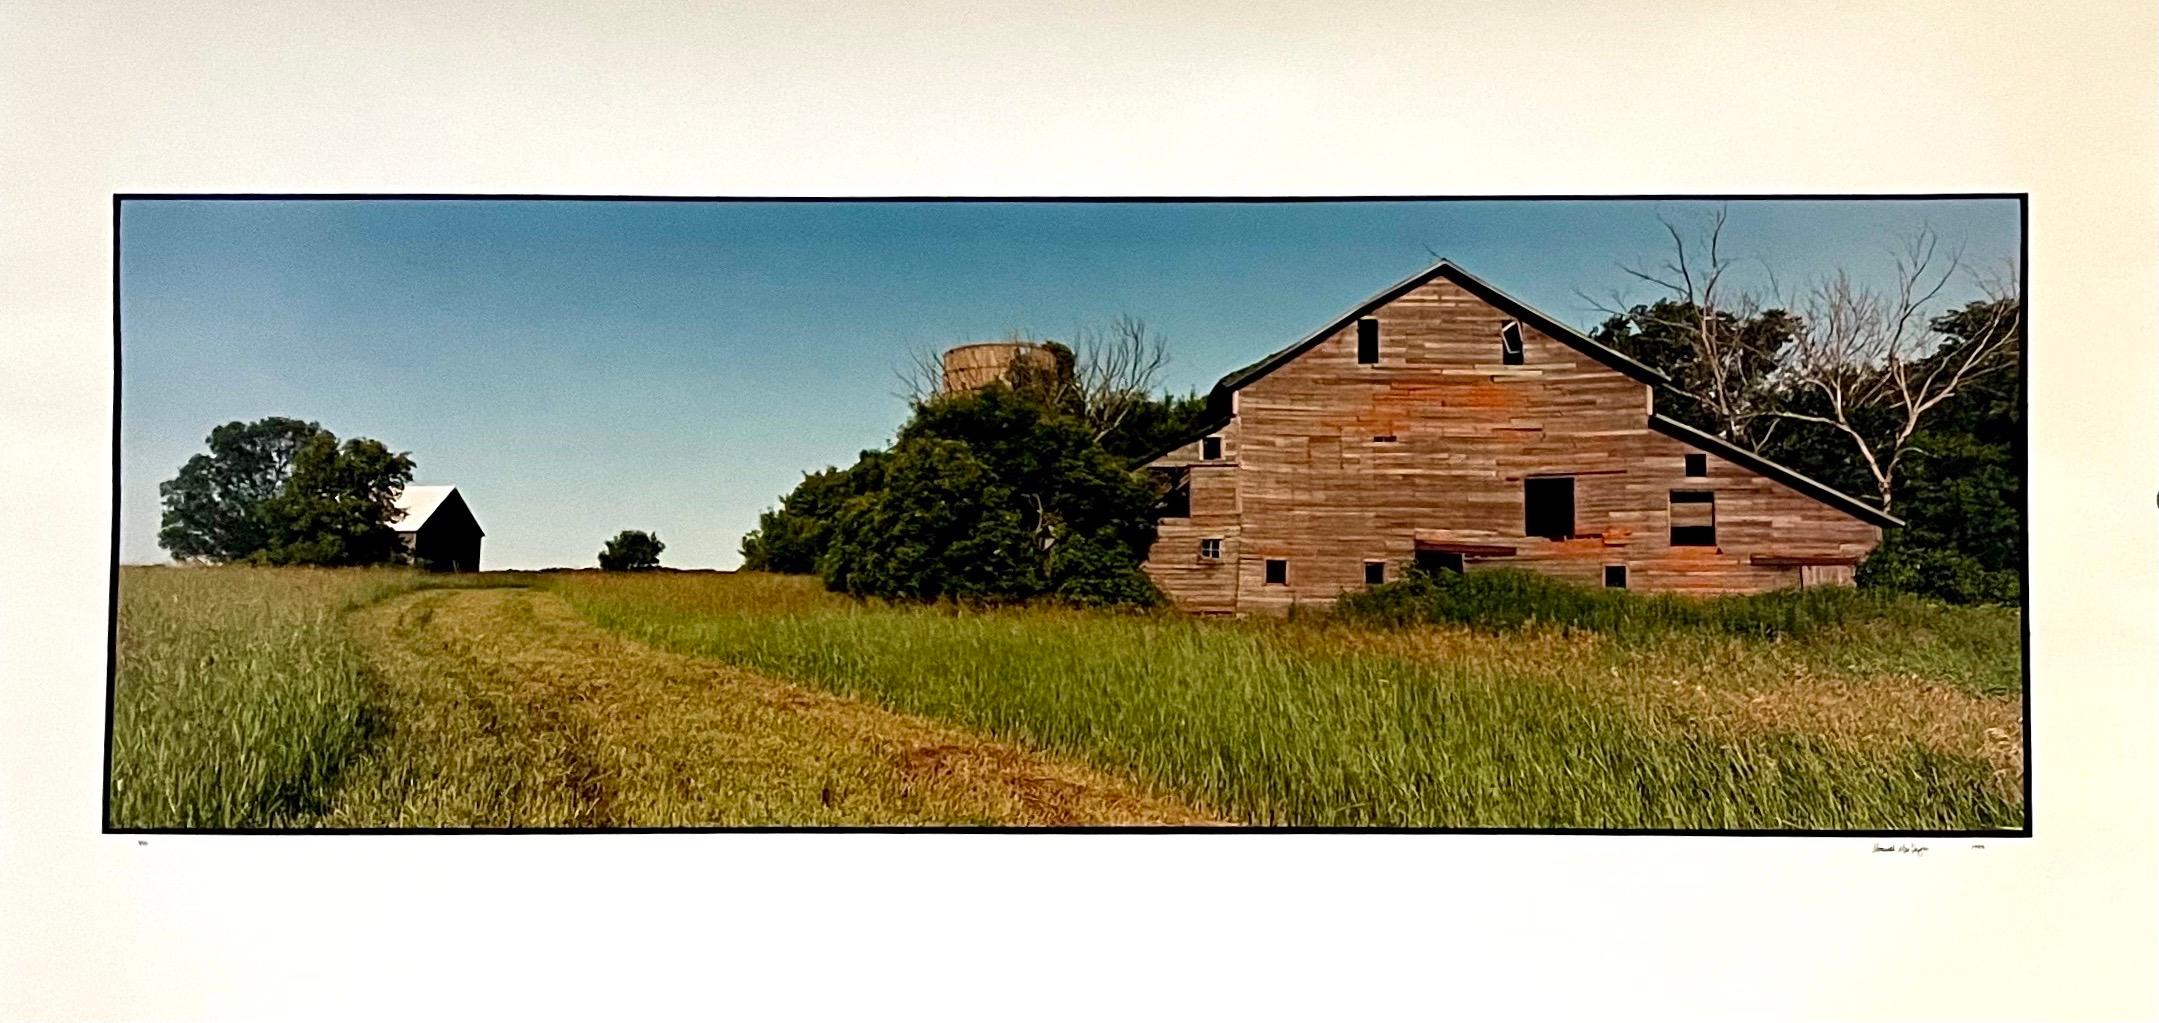 Landscape Photograph Maxwell Mackenzie - Vieux paysage d'été de grange, grande photographie couleur vintage en panneau, signée